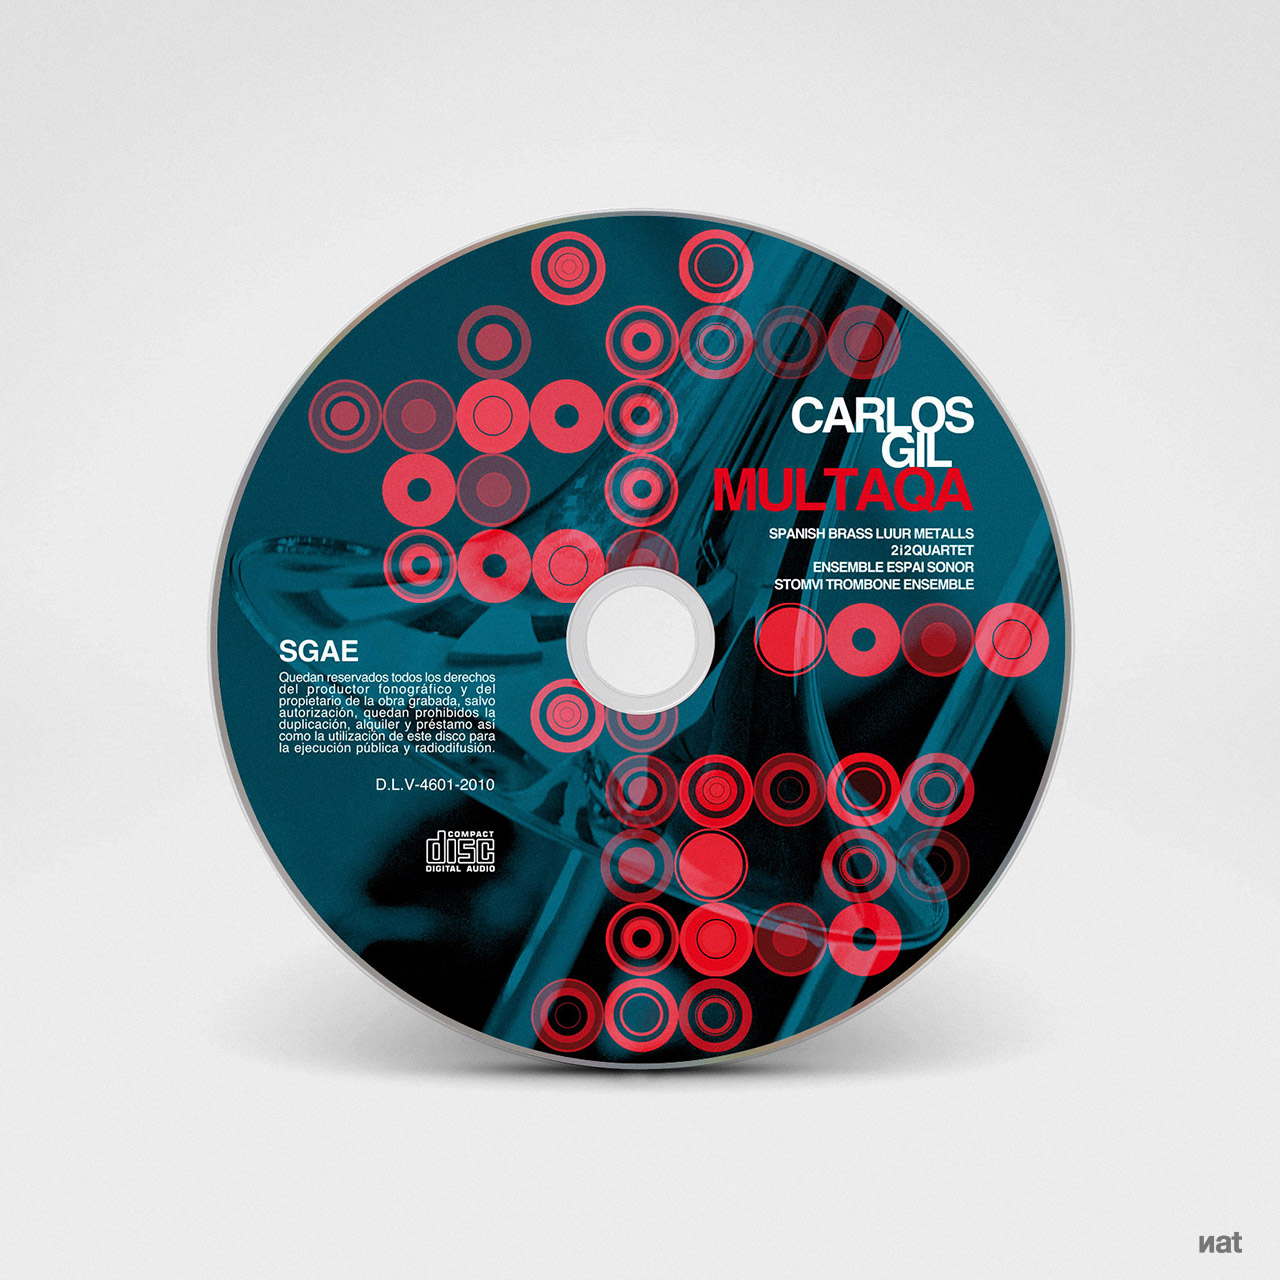 Diseño y fotografía para el disco CD 'Multaqa' de Carlos Gil.